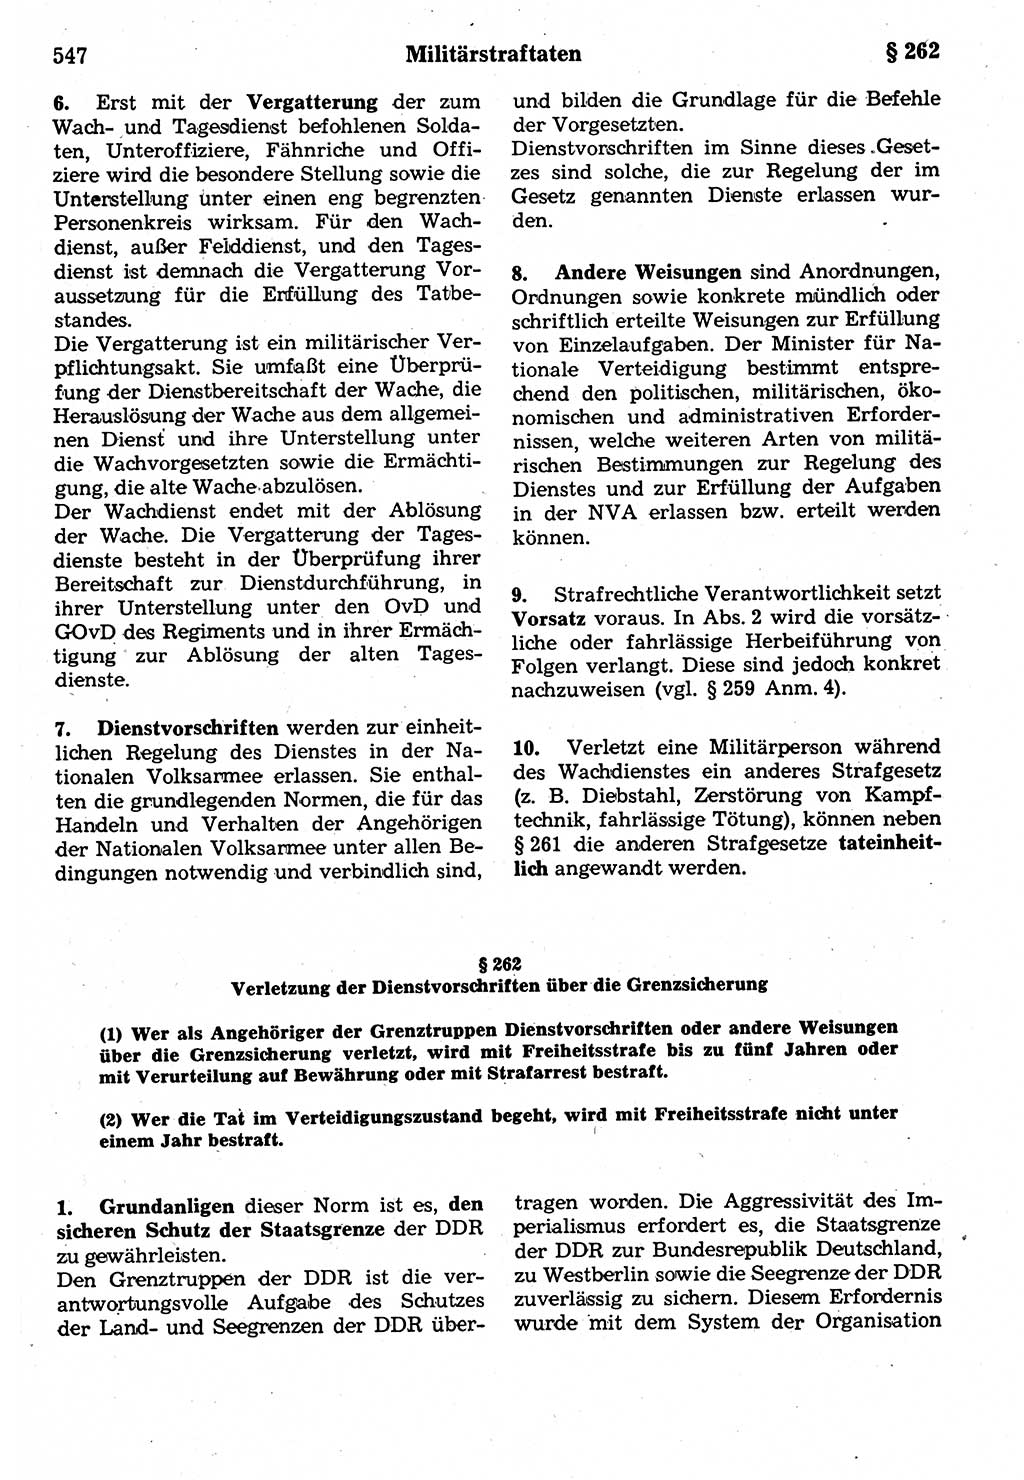 Strafrecht der Deutschen Demokratischen Republik (DDR), Kommentar zum Strafgesetzbuch (StGB) 1987, Seite 547 (Strafr. DDR Komm. StGB 1987, S. 547)